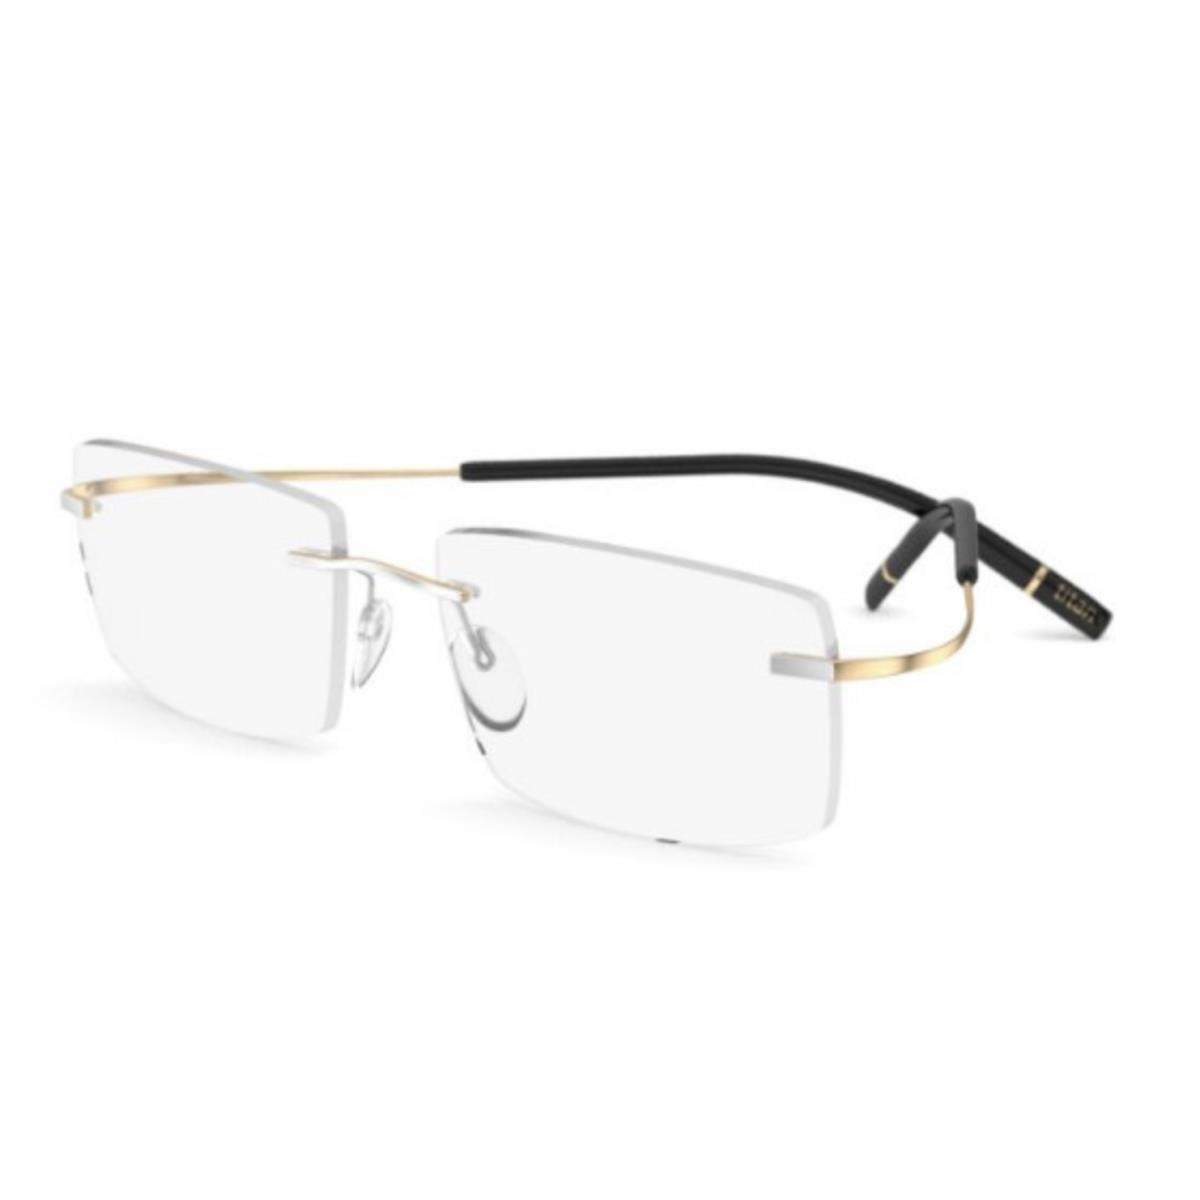 Silhouette Rimless Tma Eyeglasses 5539 IZ 8080 54-19 23kt Gold Plated Frames